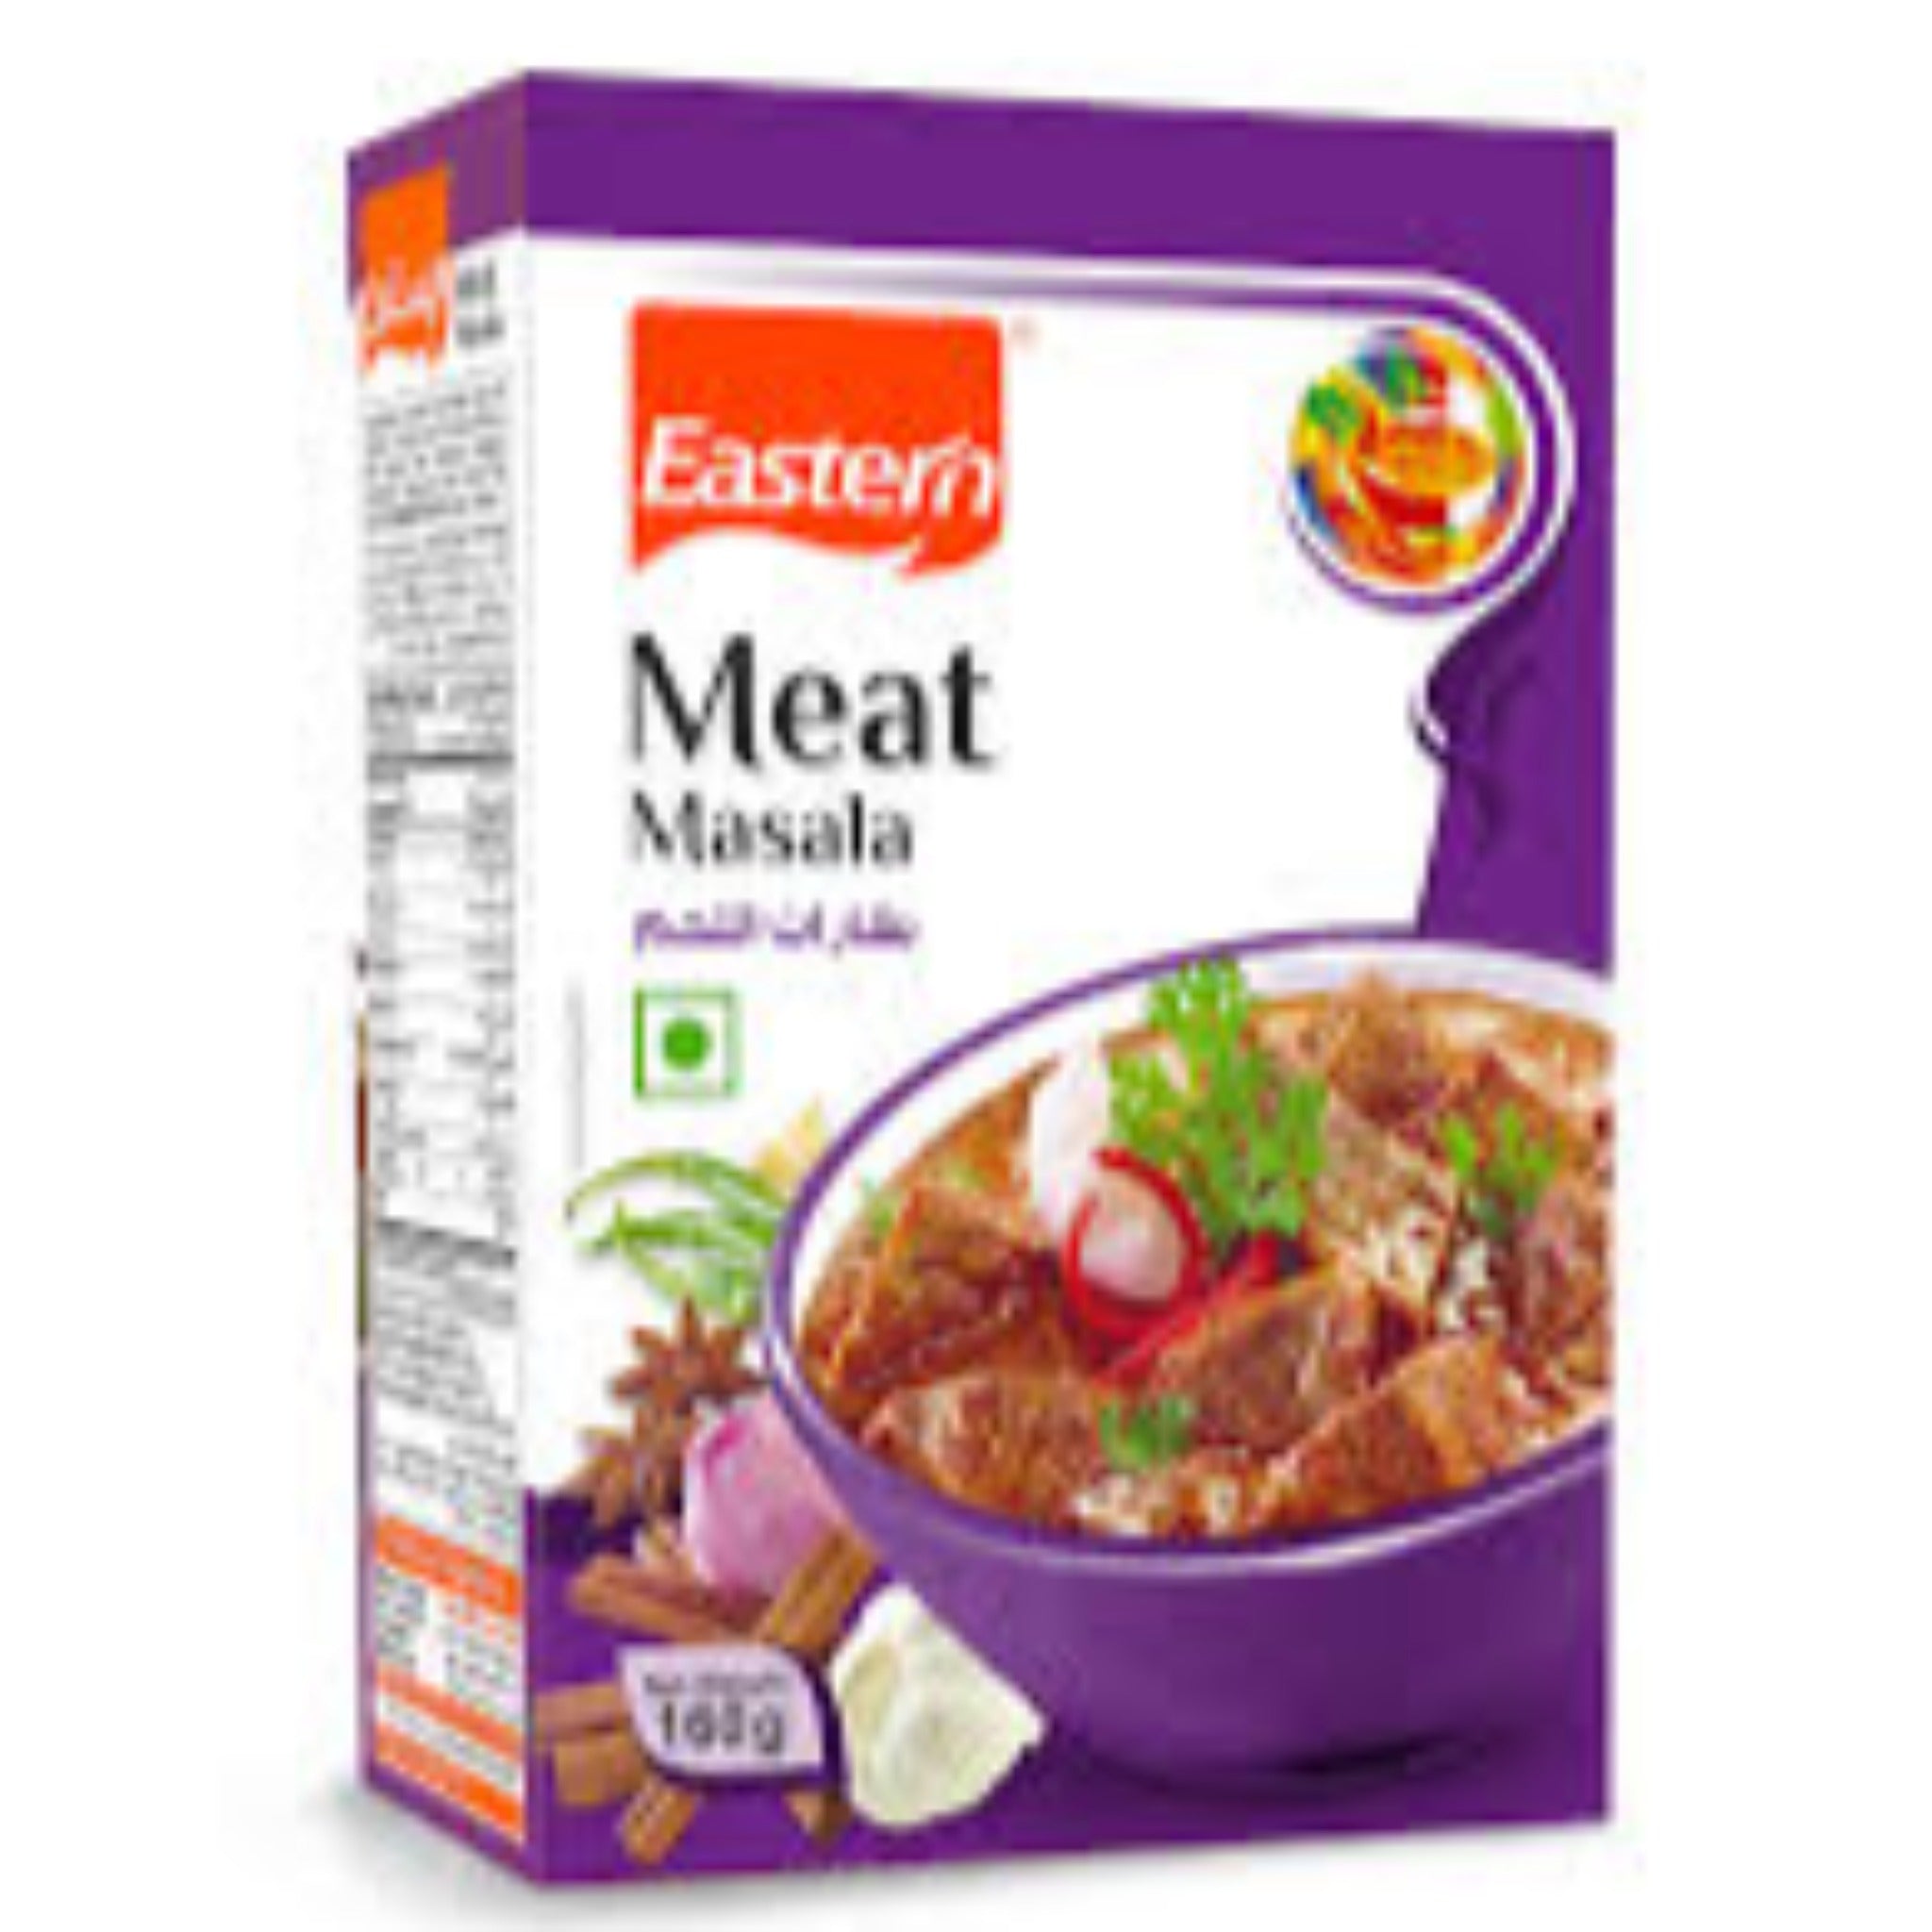 Eastern Meat masala 160g